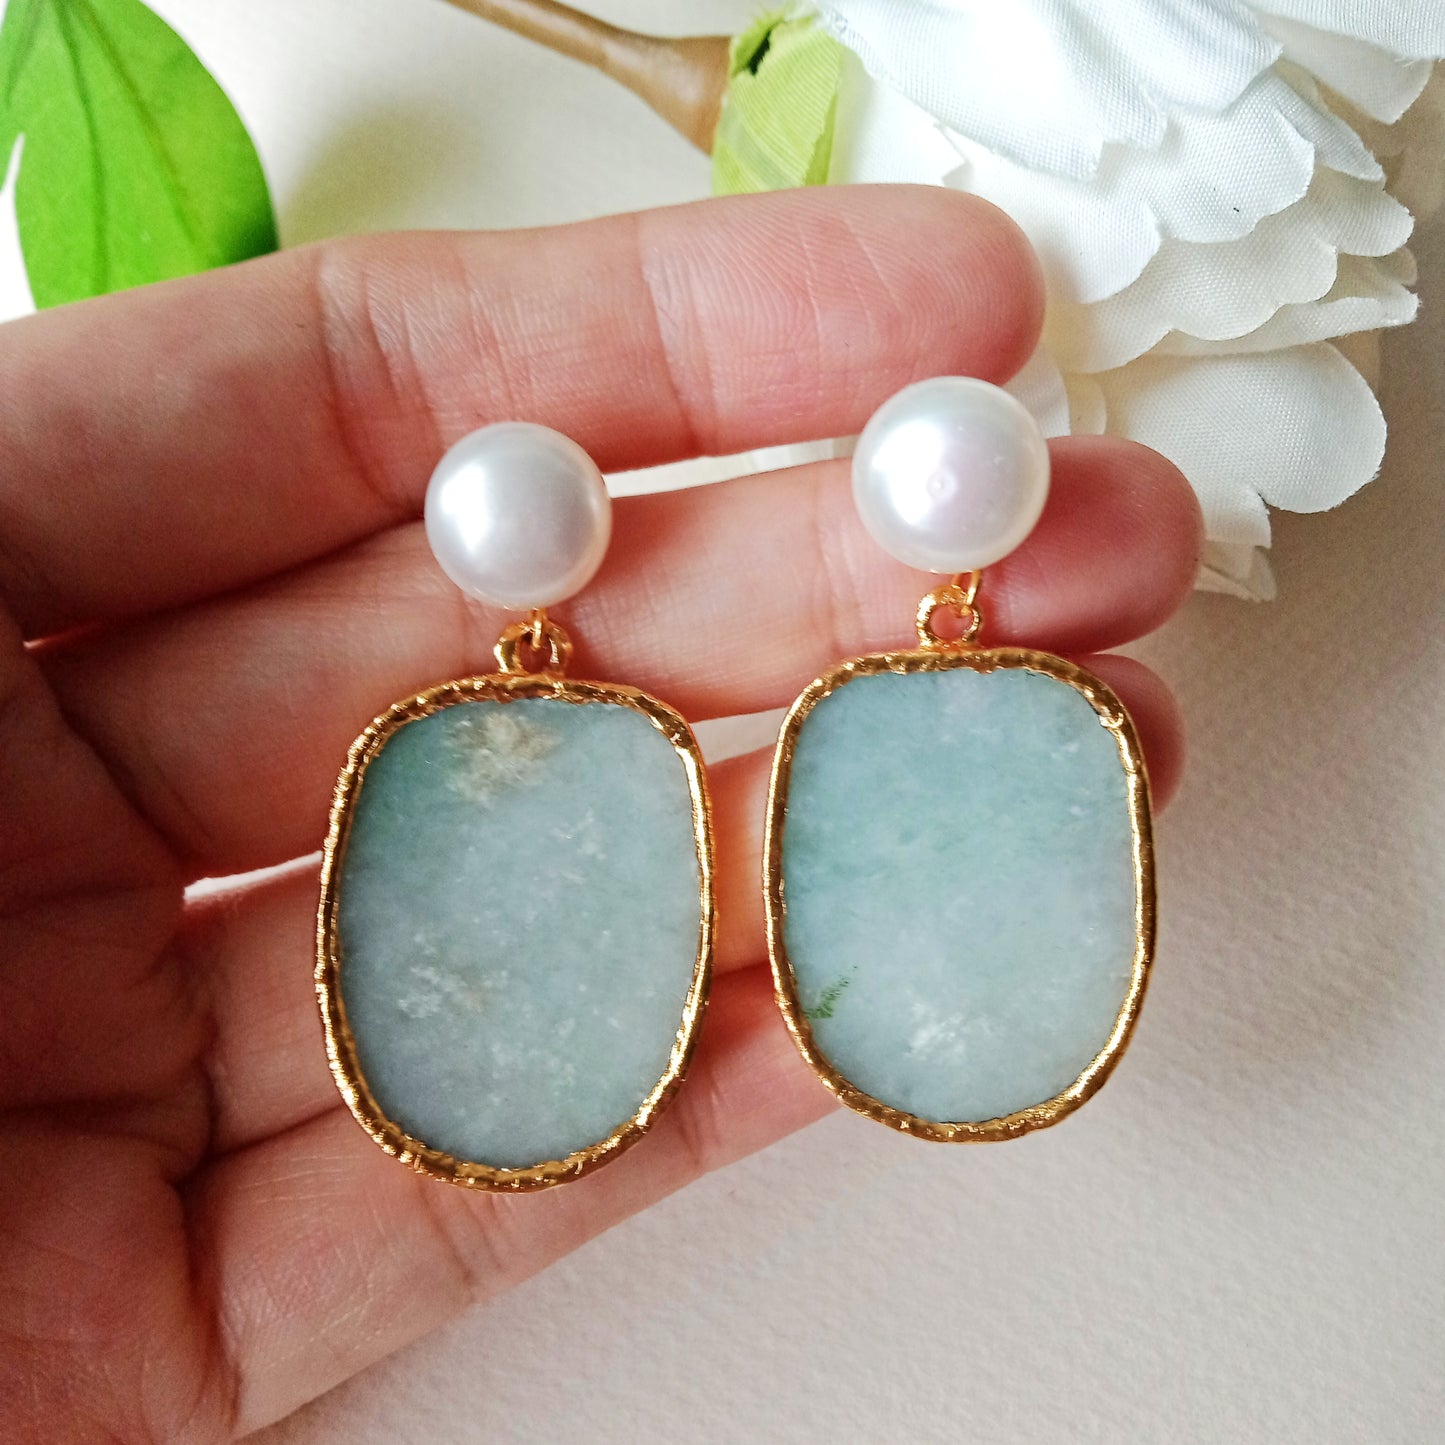 Jade and FW pearl earrings